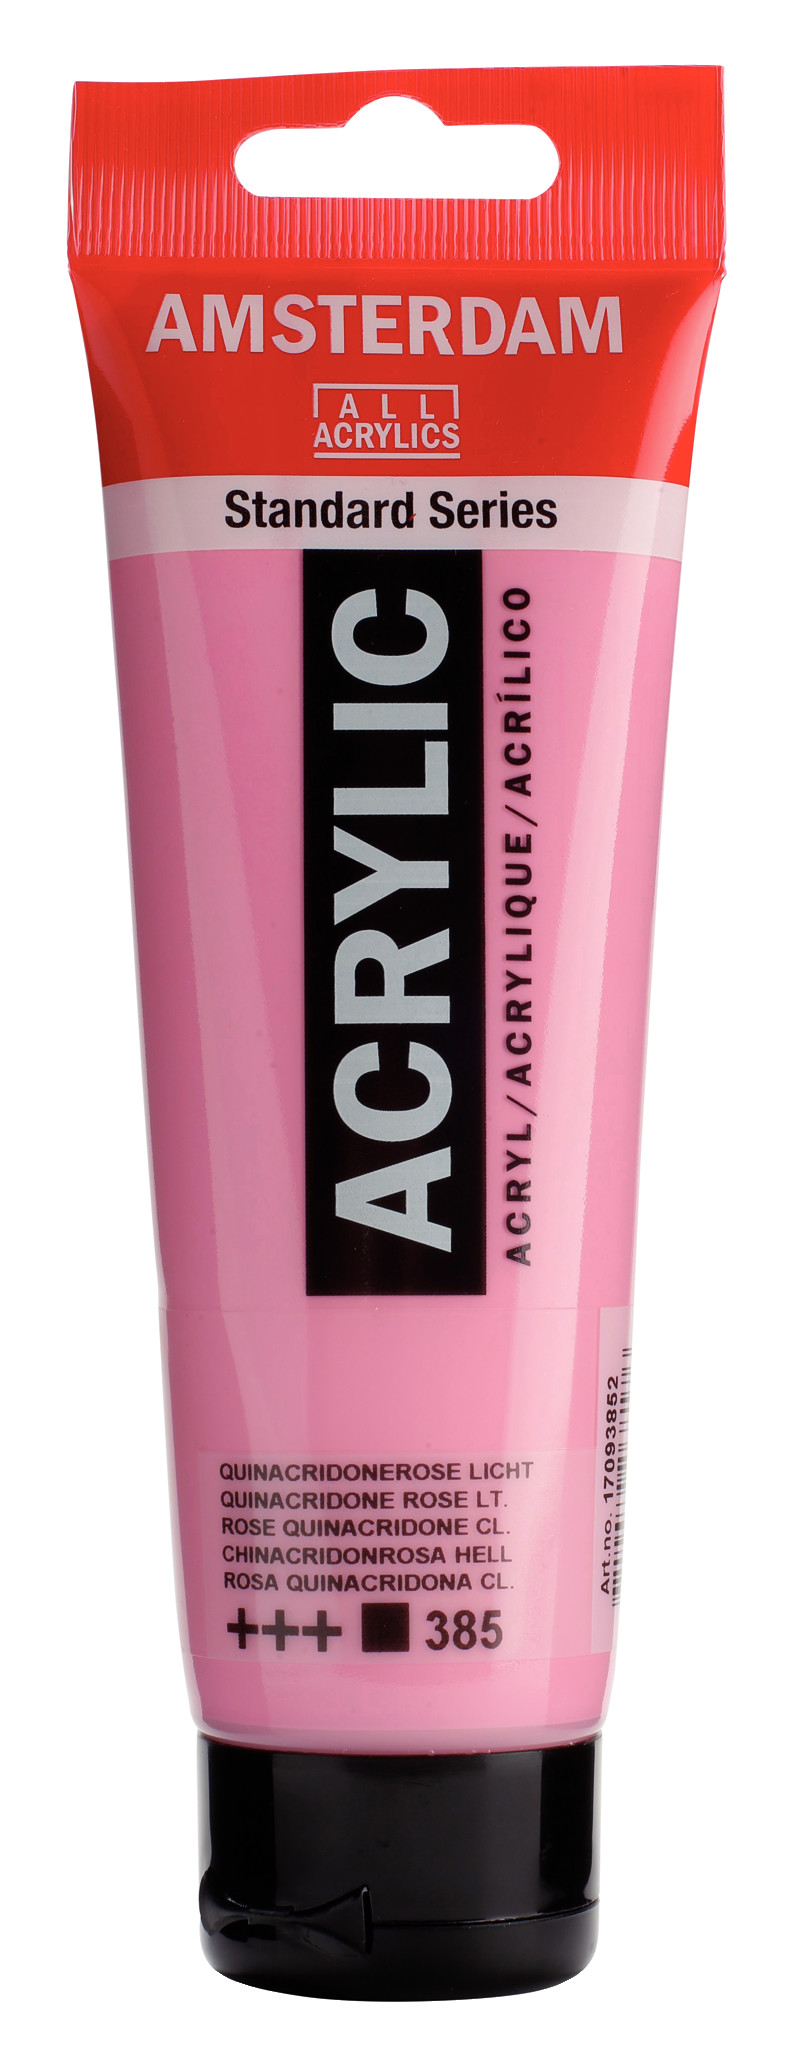 Acrilico Amsterdam rosa quinacridona claro tubo 120ml